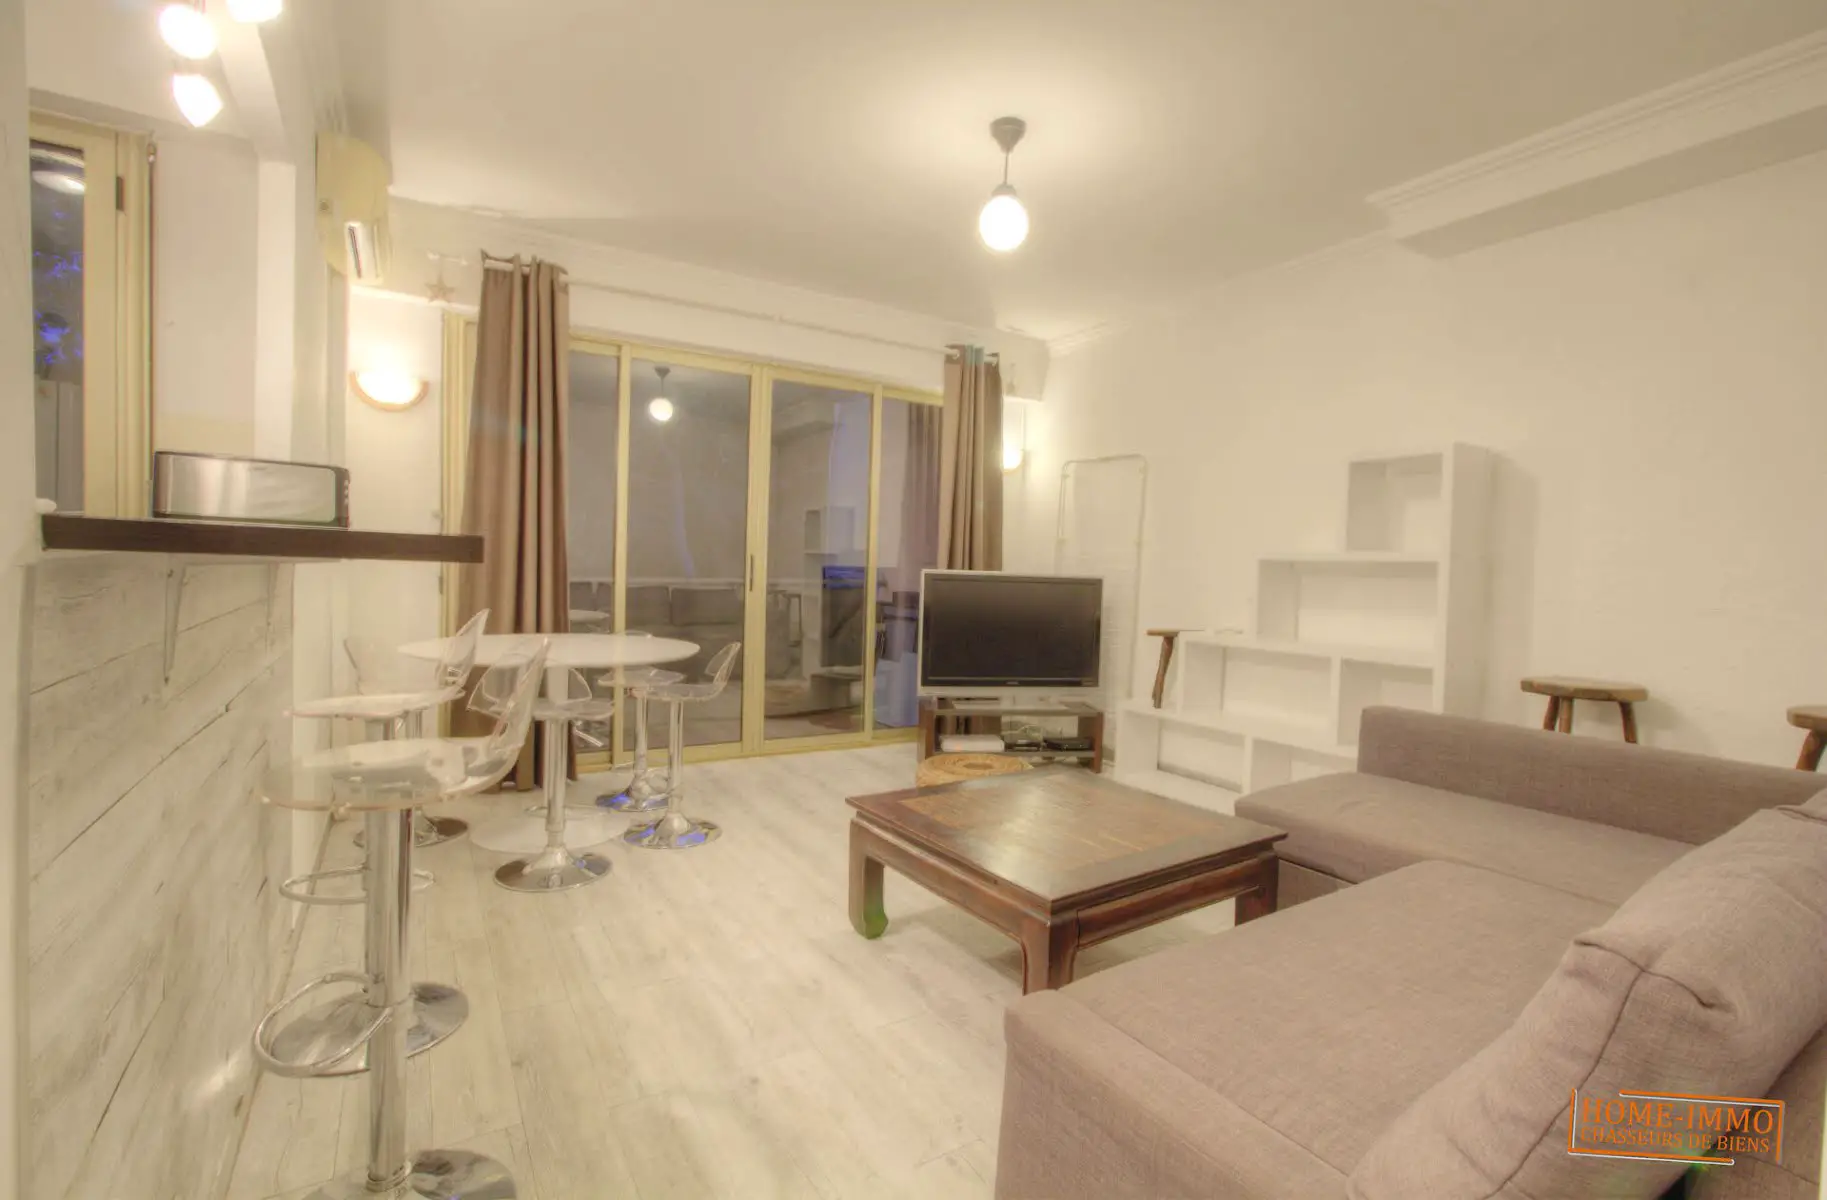 Location appartement meublé 2 pièces 49,27 m2